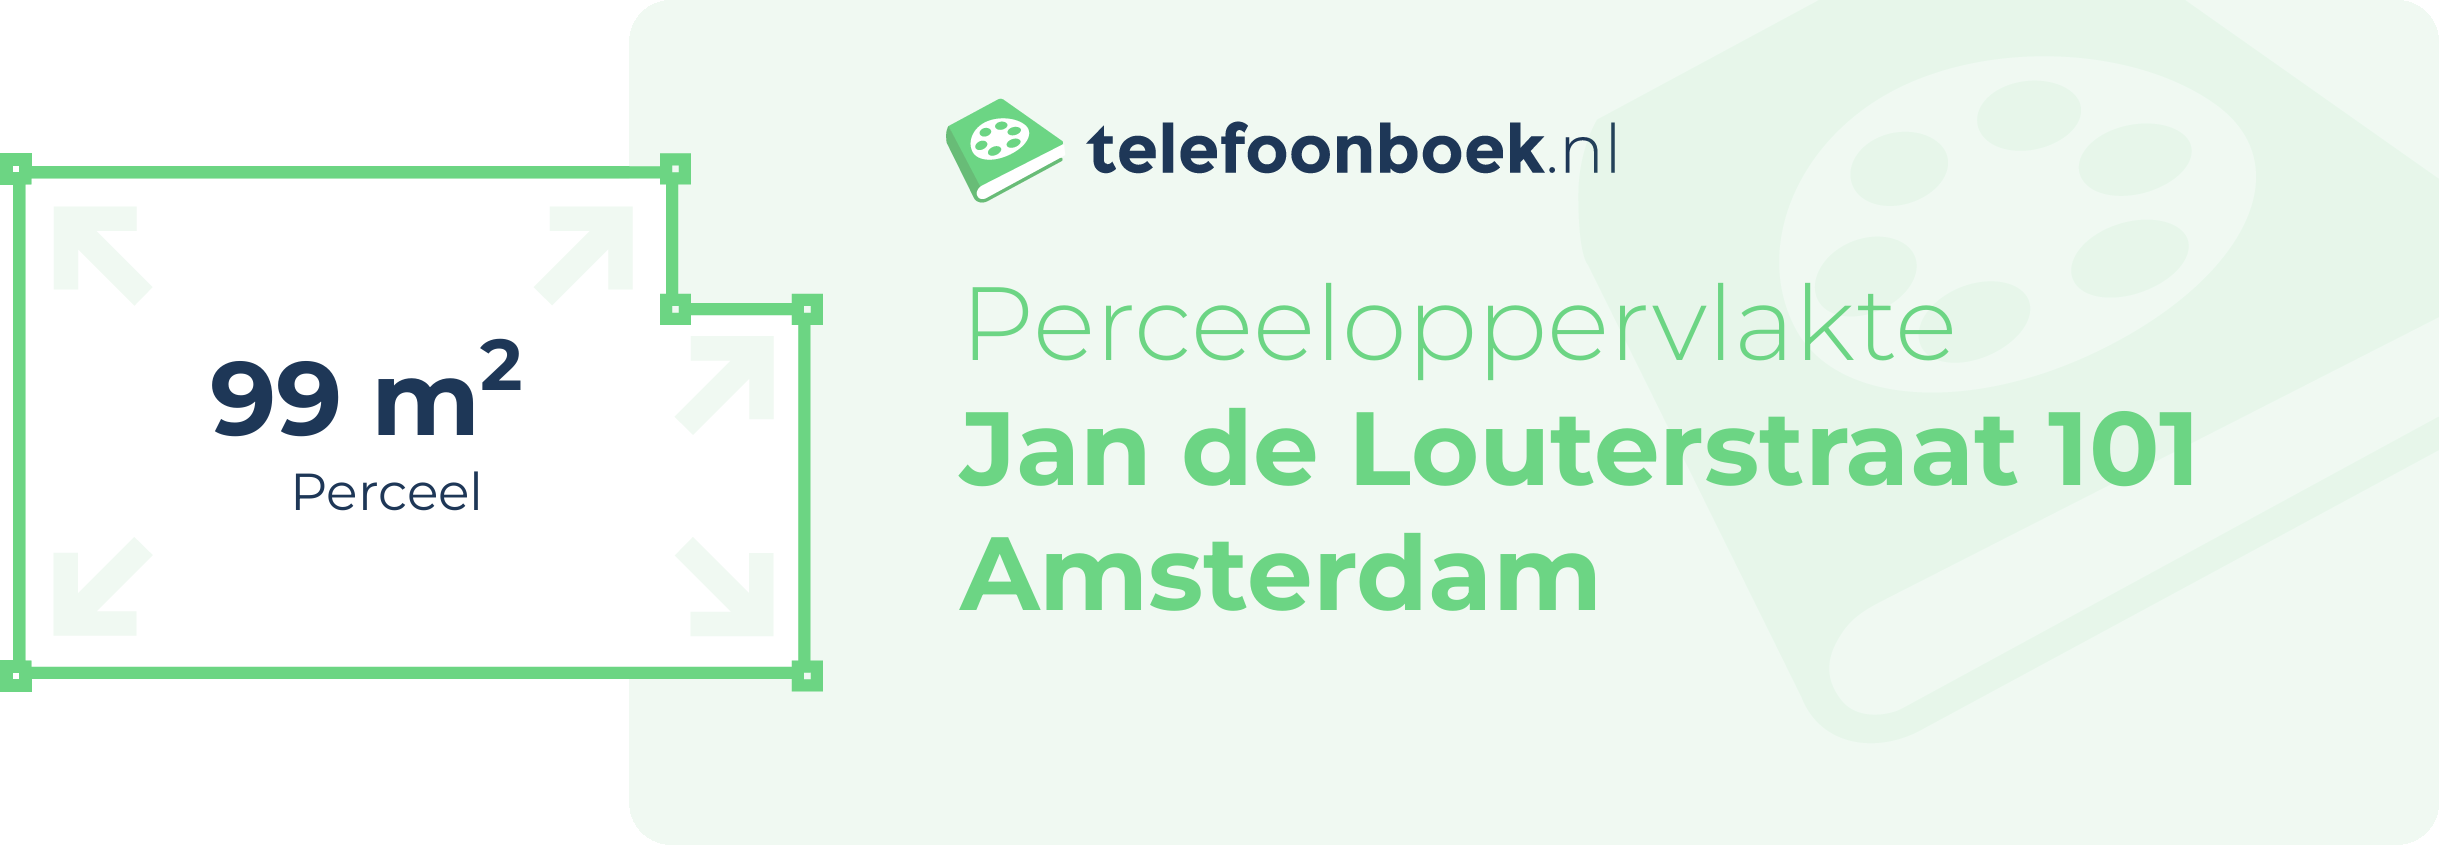 Perceeloppervlakte Jan De Louterstraat 101 Amsterdam